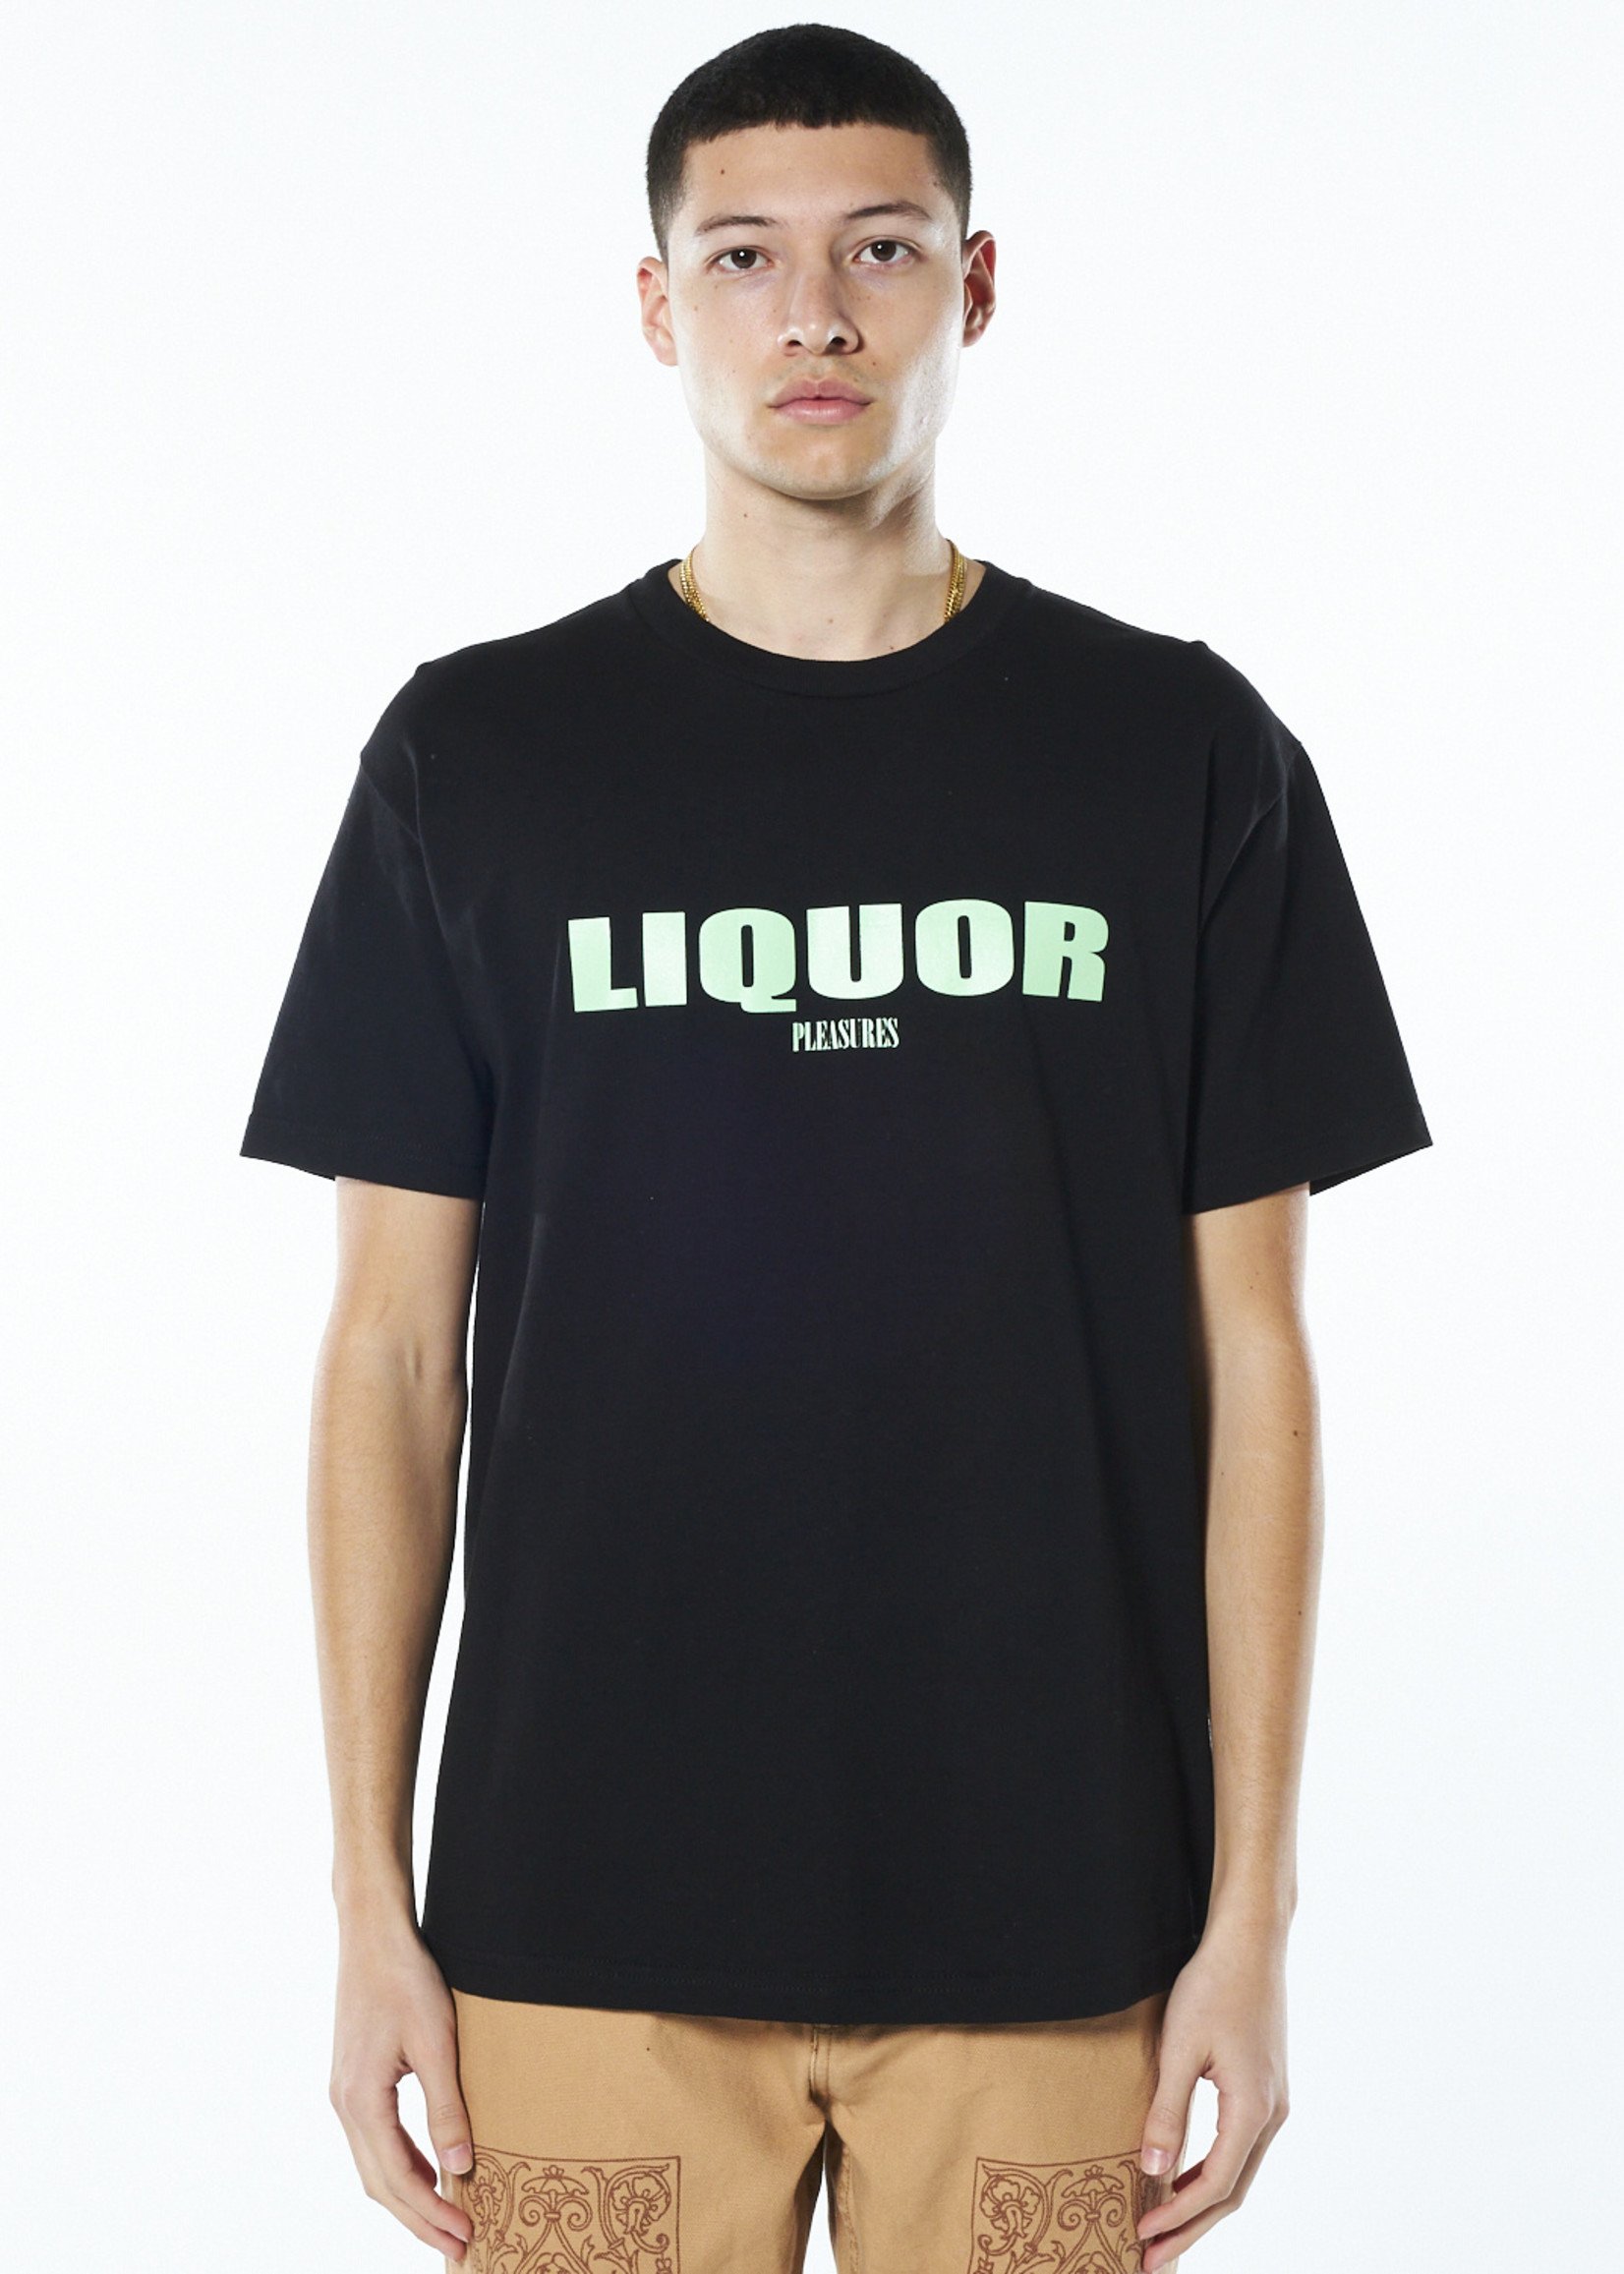 PLEASURES Liquor T-shirt in Black